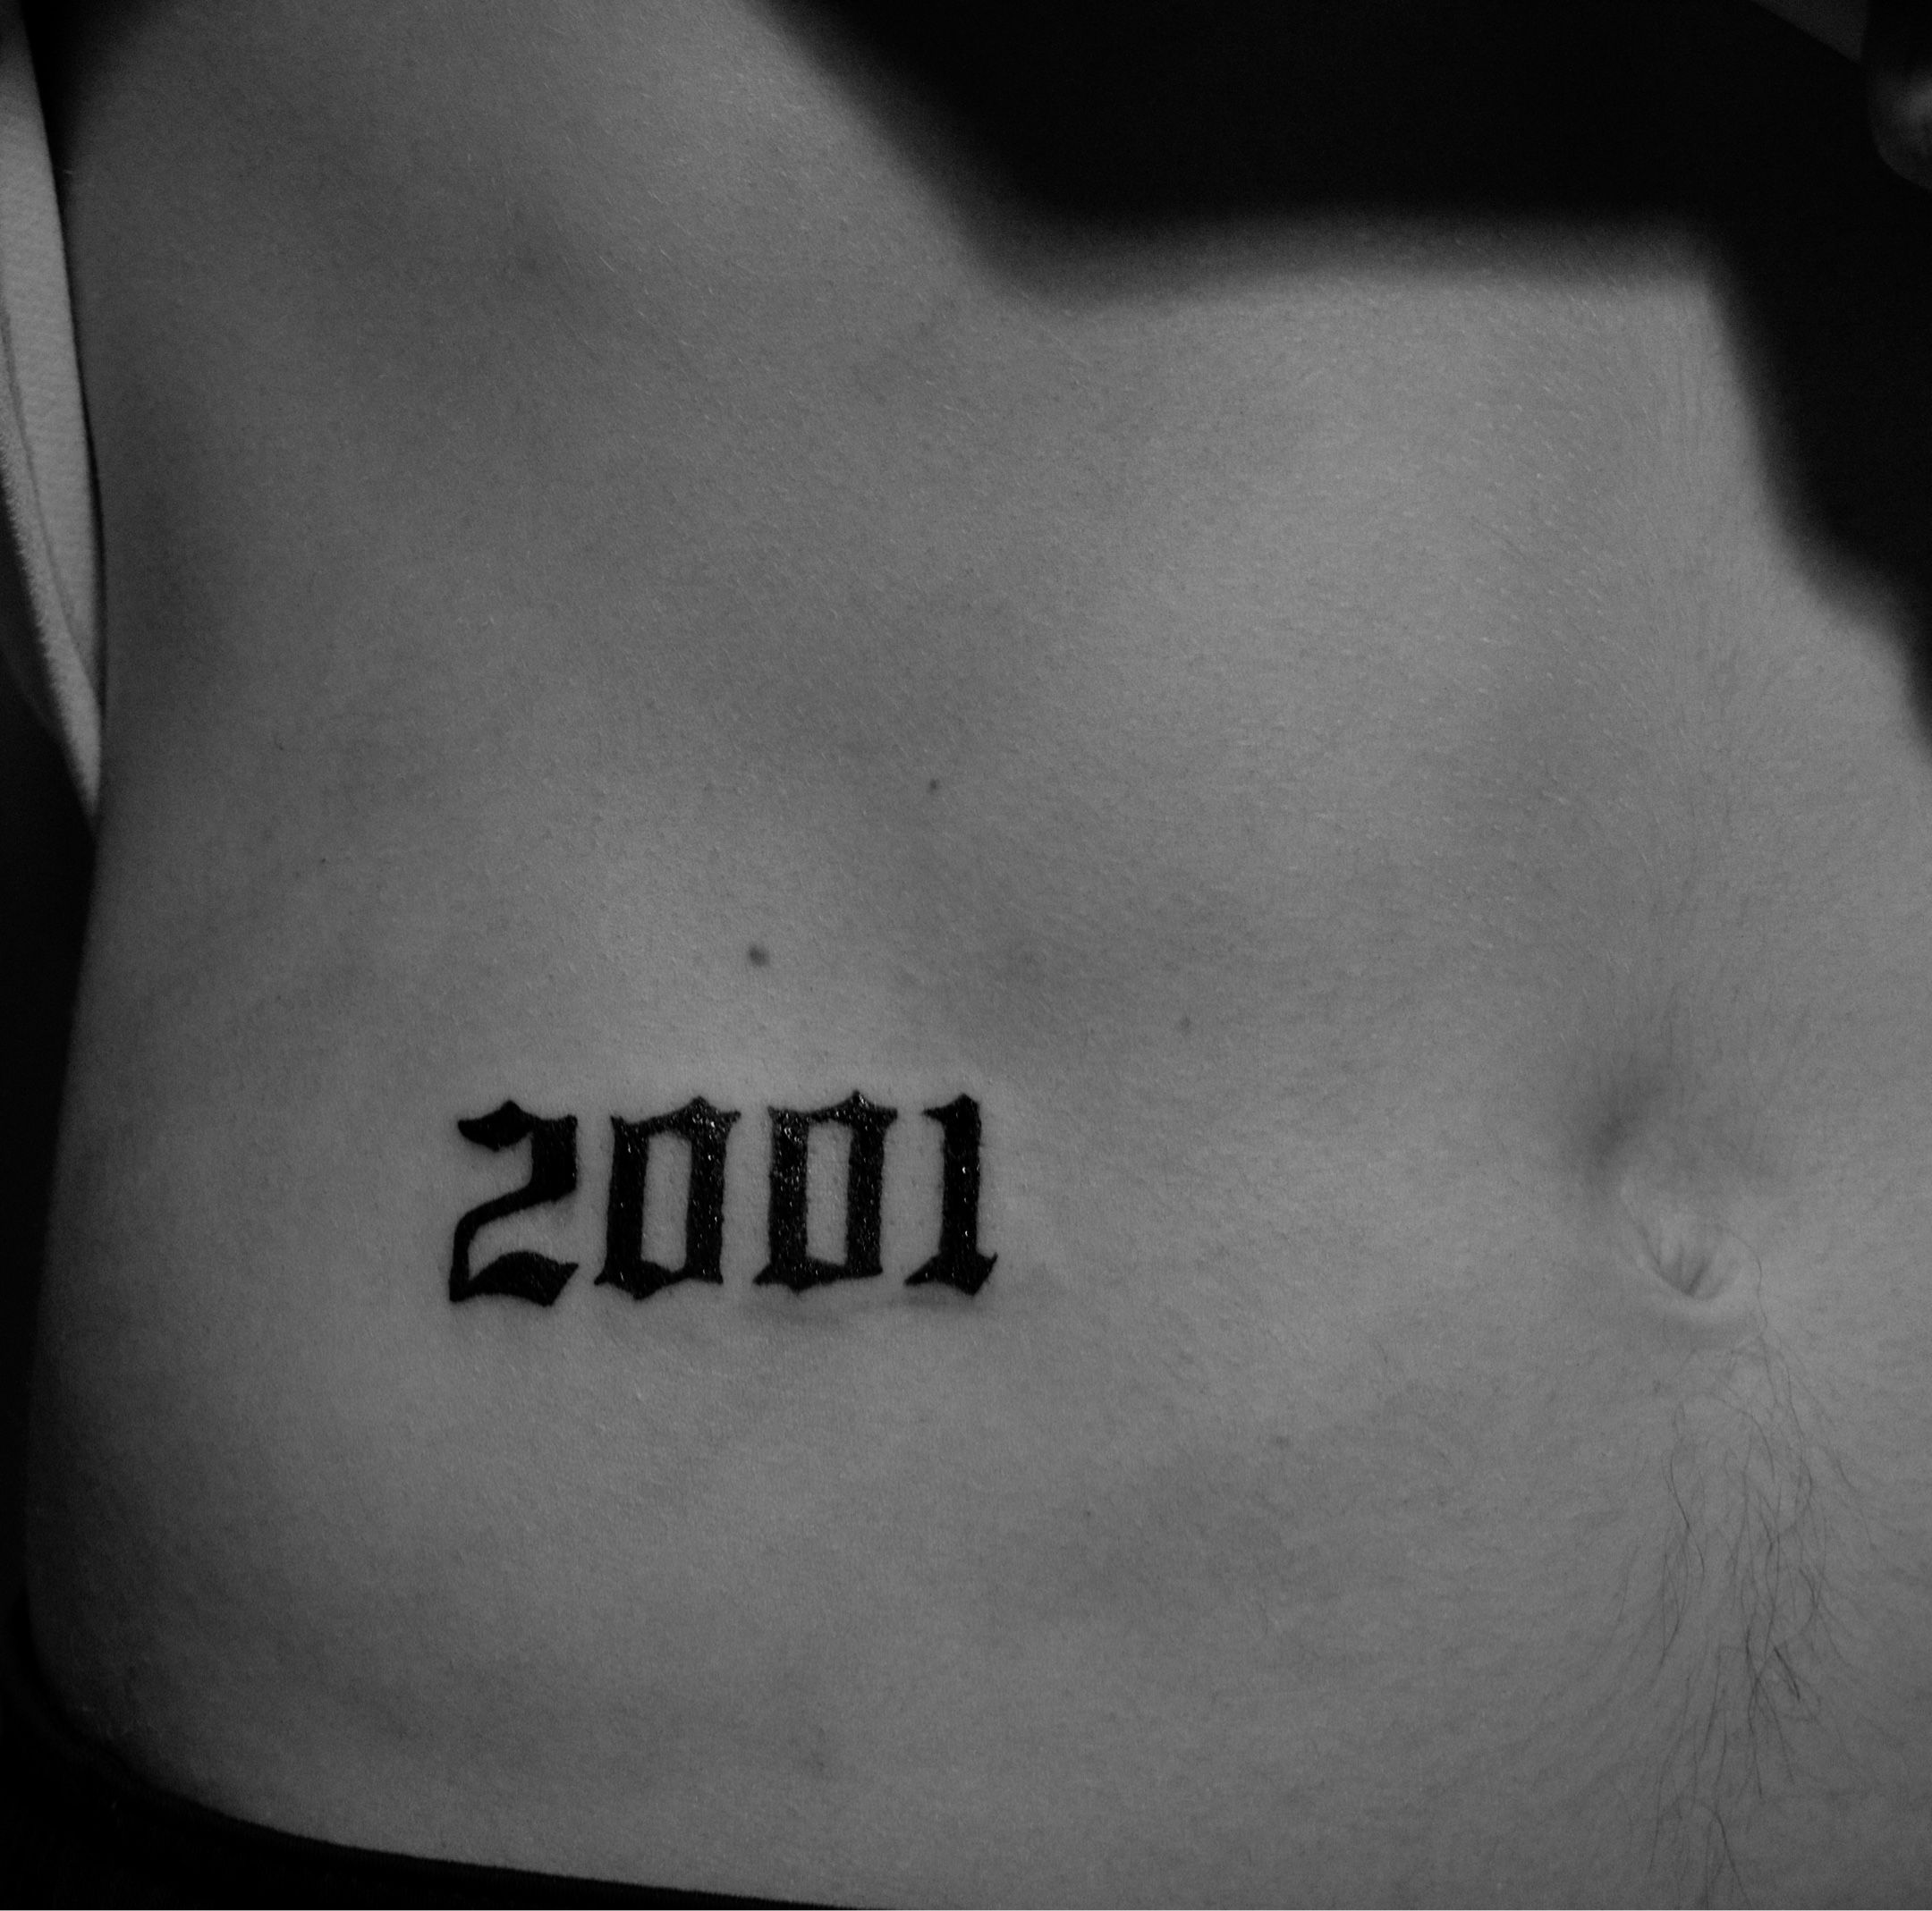 Tattoo uploaded by Tommy Lee Hellberg • 2001 • Tattoodo